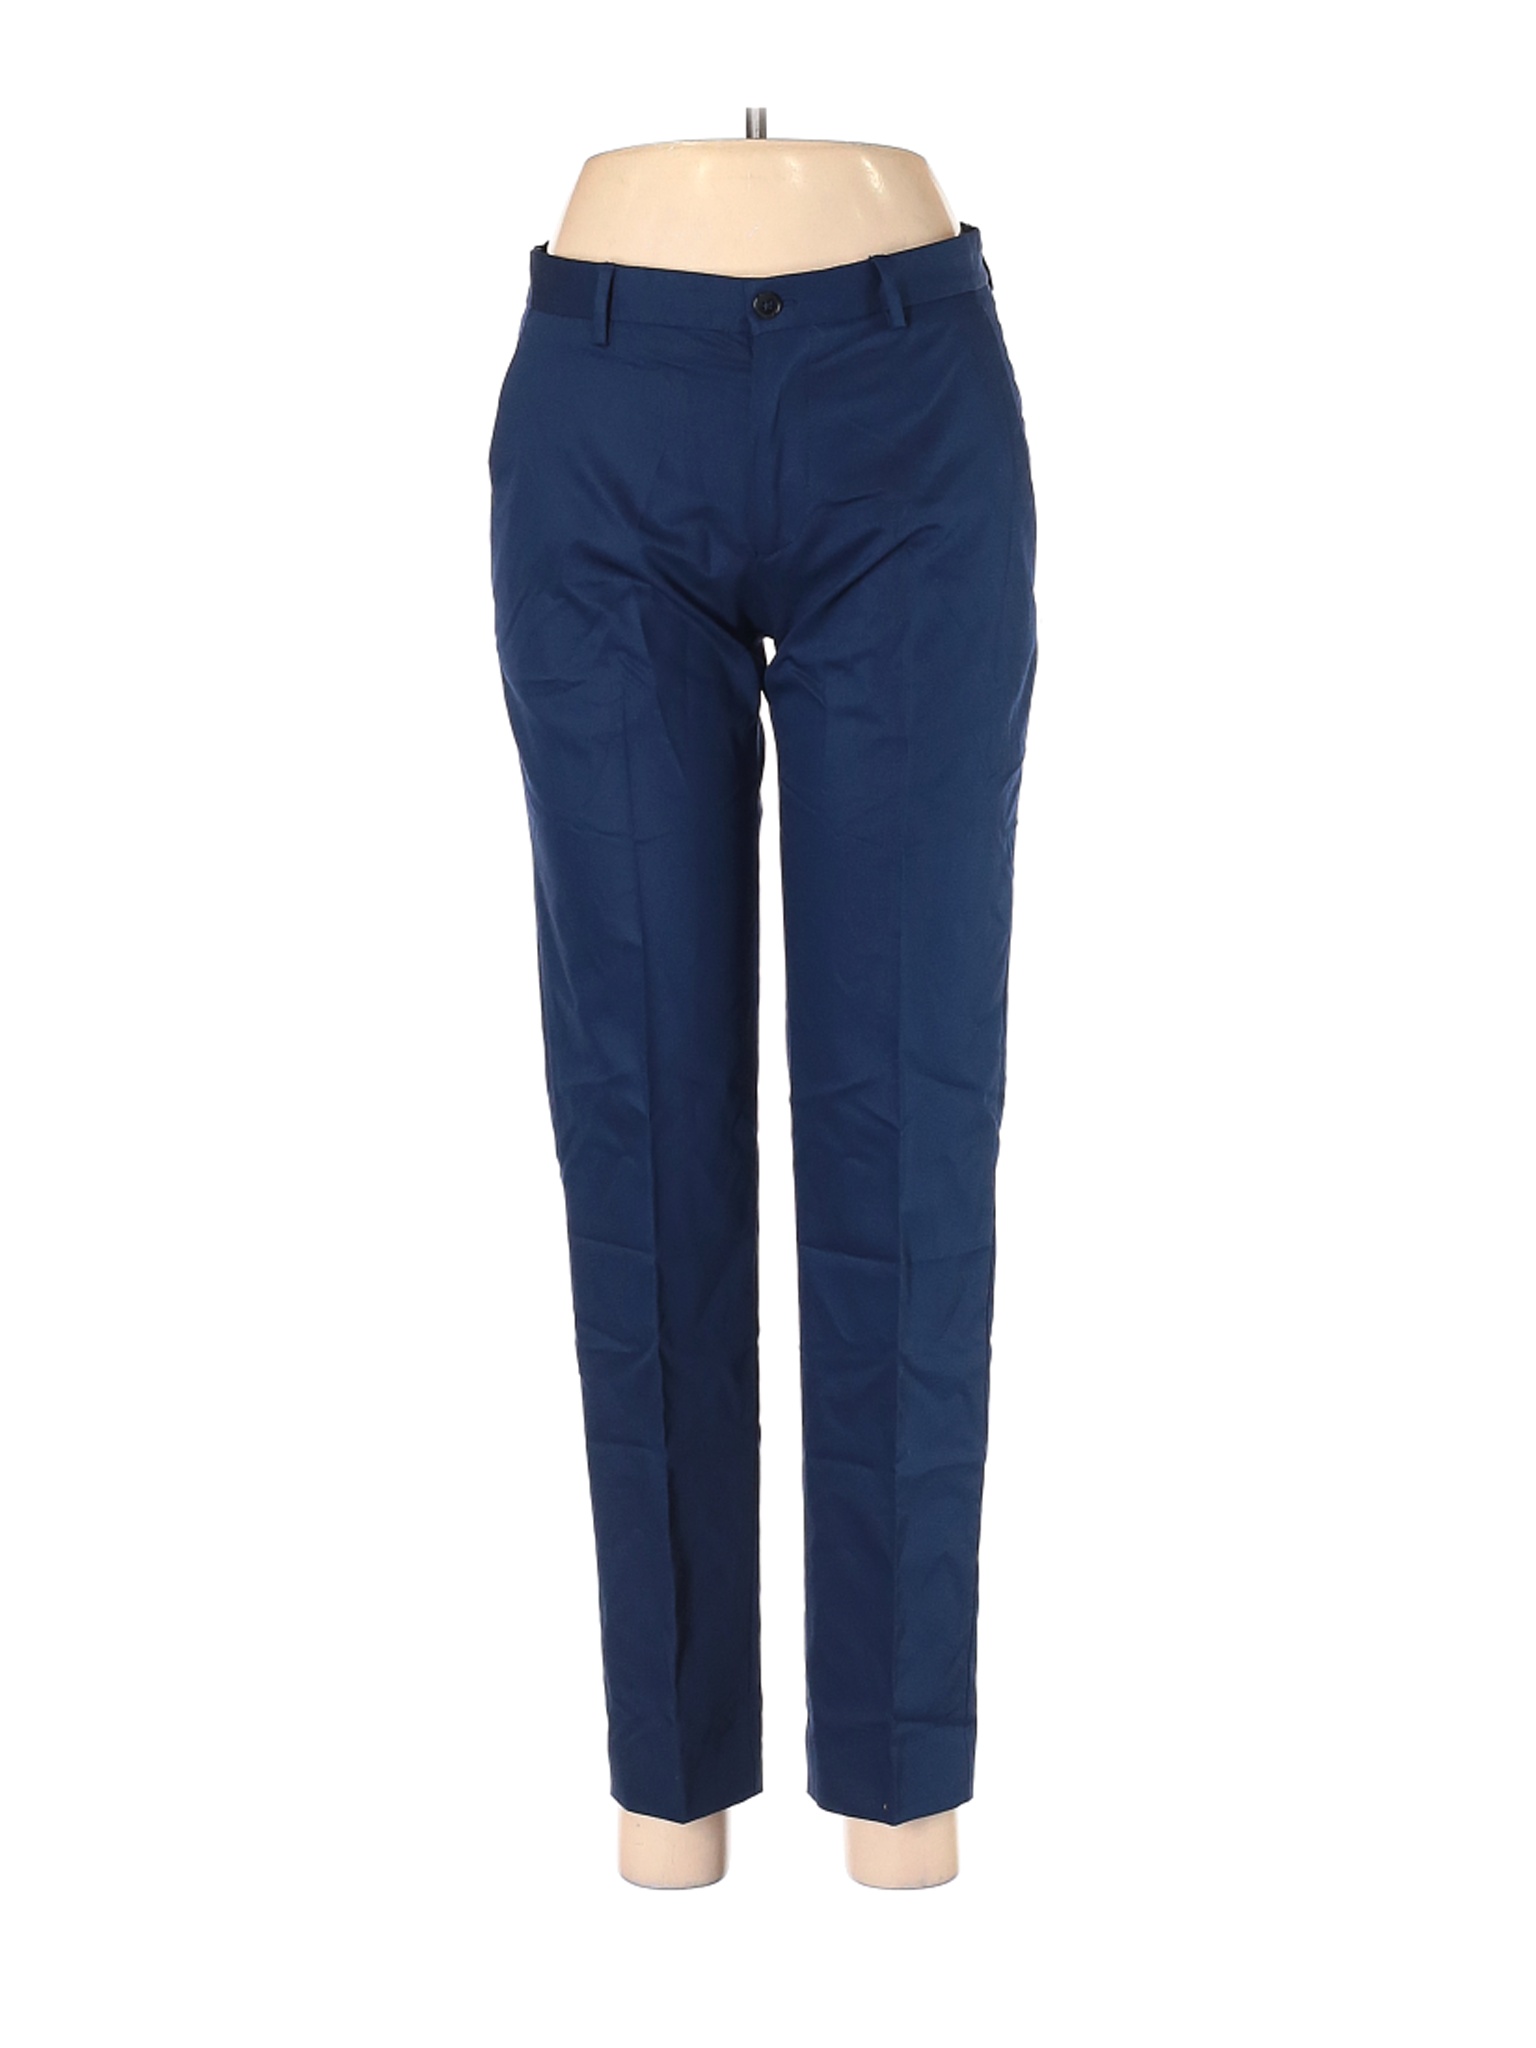 Zara Women Blue Khakis 29W | eBay